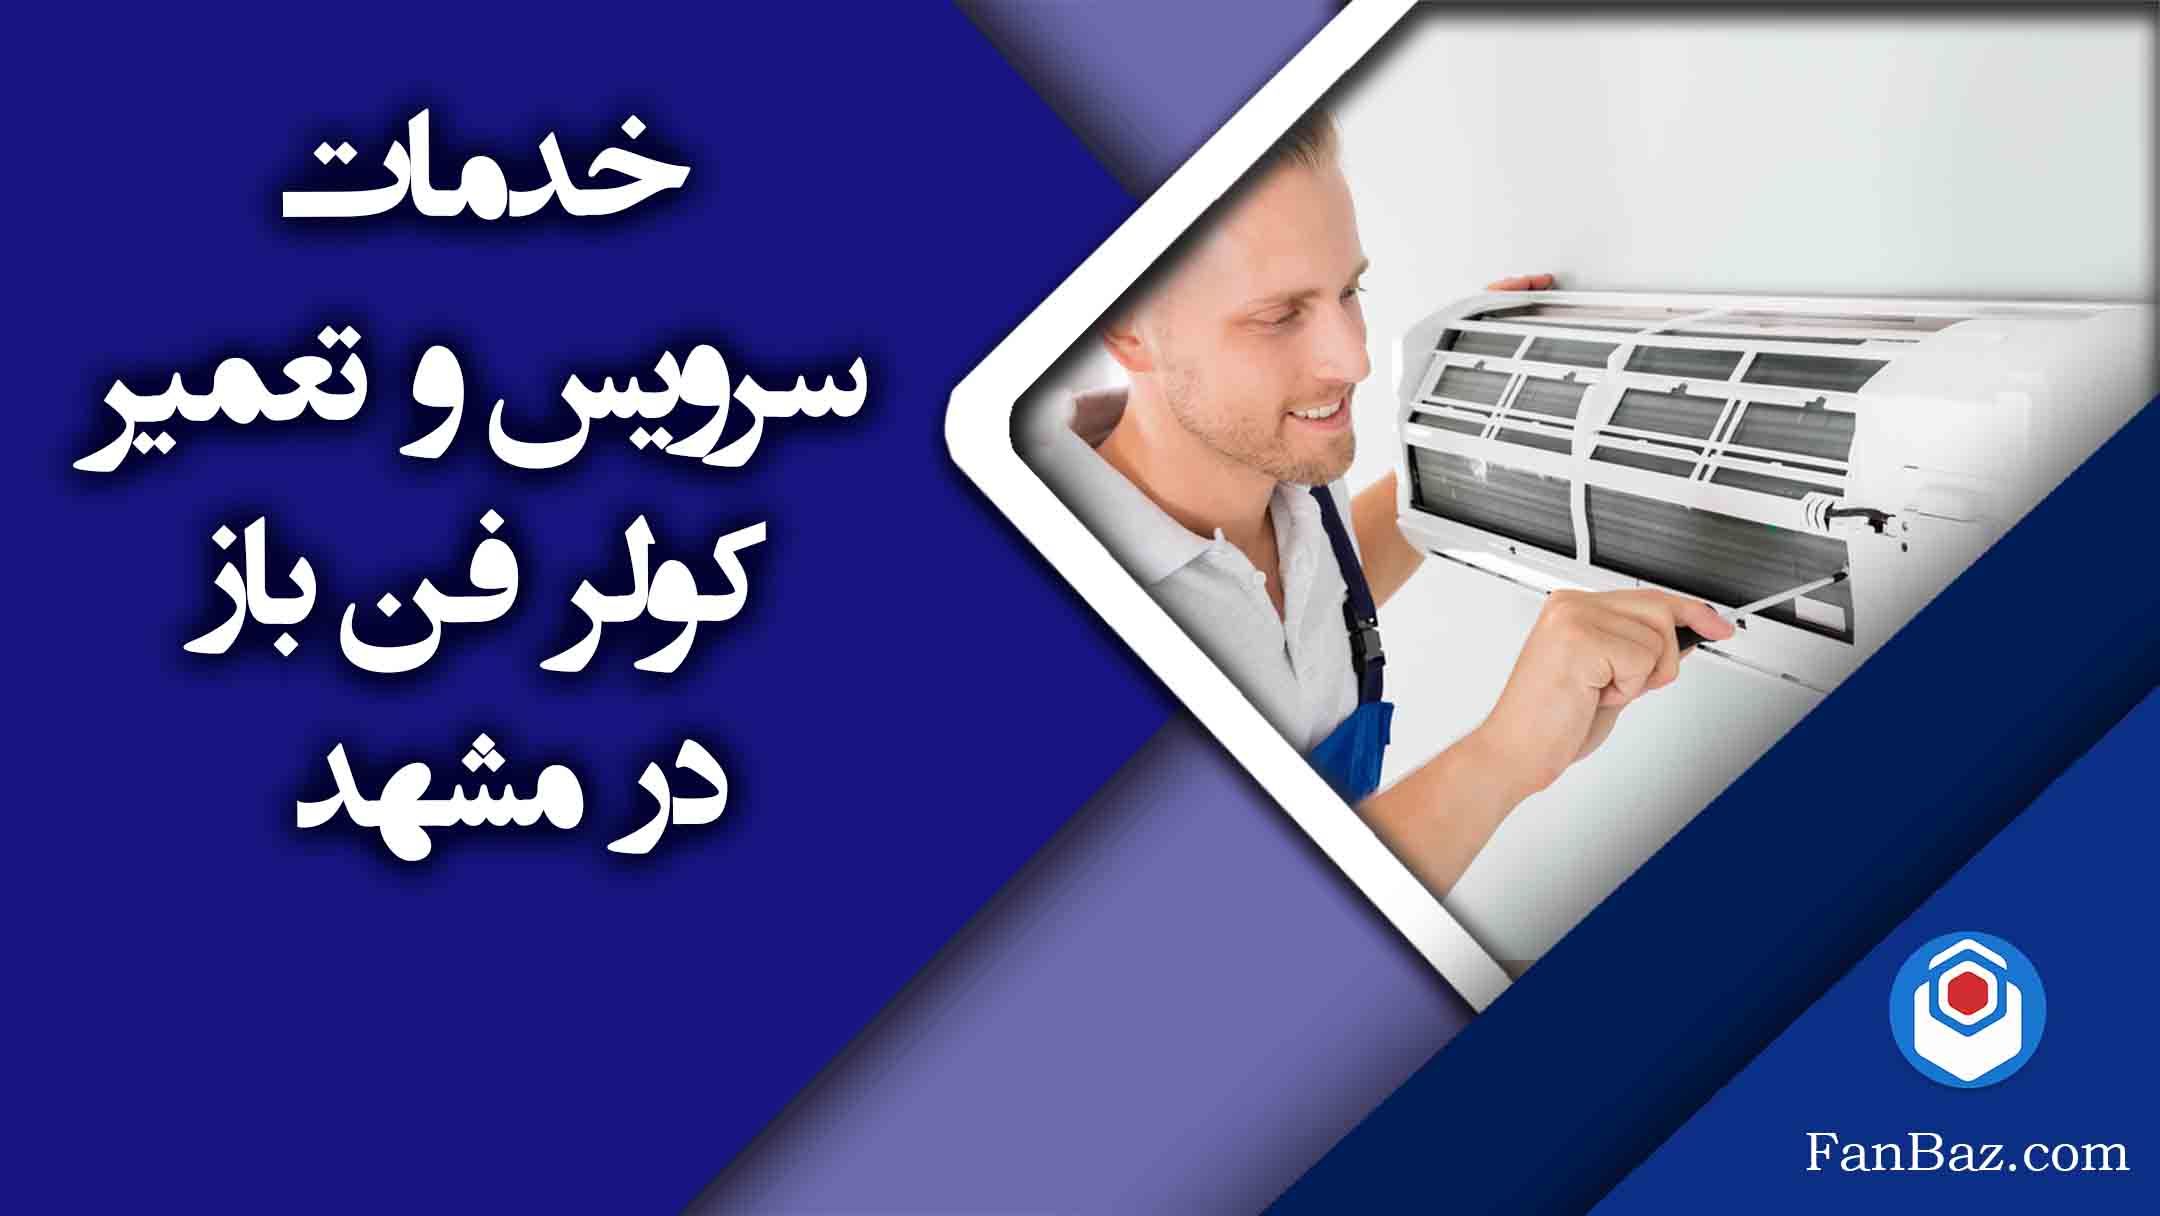 خدمات سرویس و تعمیر کولر فن باز در مشهد